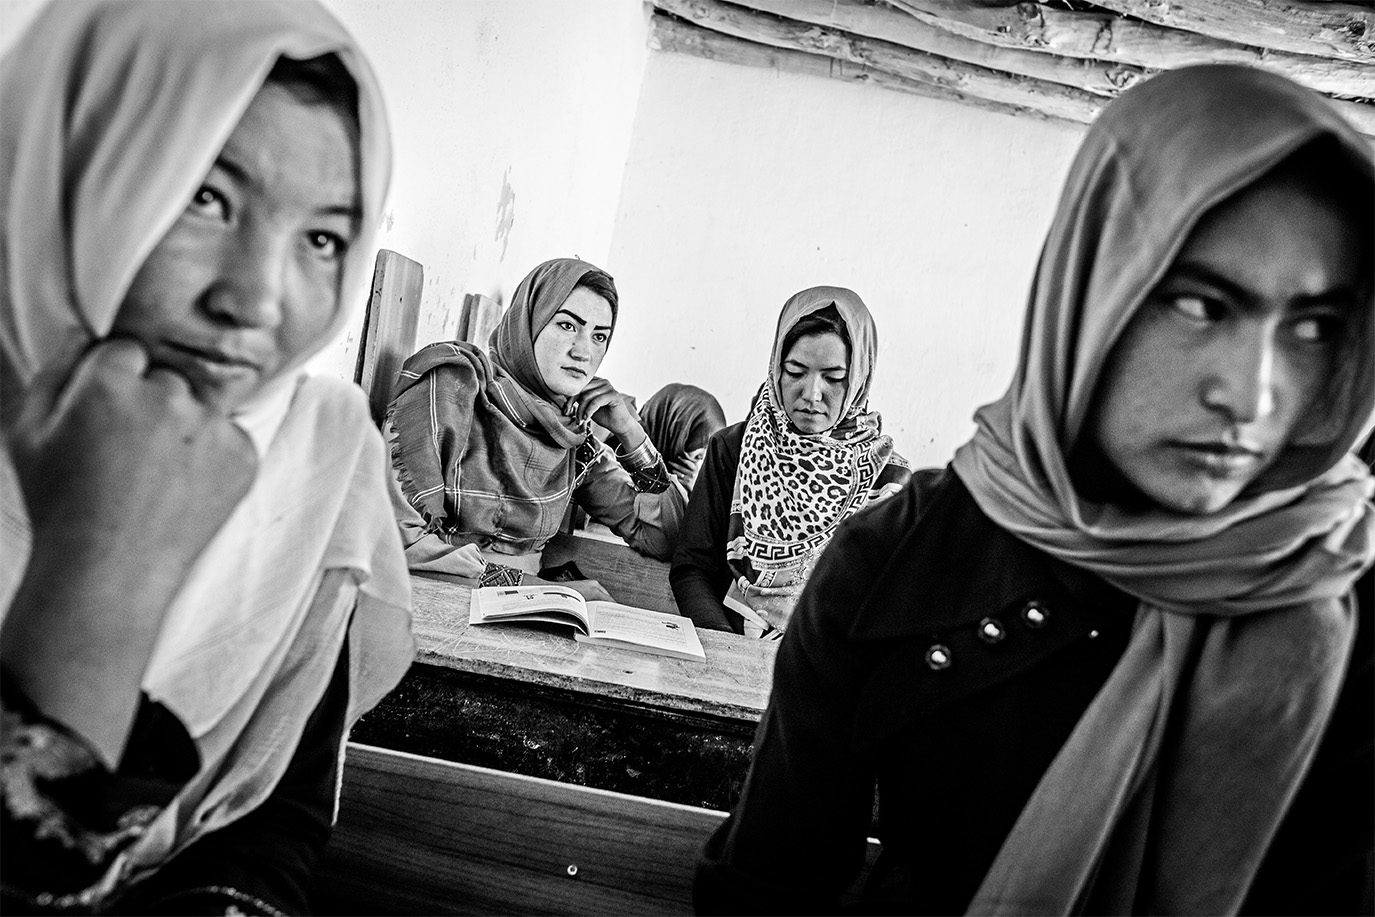 Eine schwarz-weiß Fotografie von afghanischen Frauen mit Kopftuch, die in einer Schule sitzen. © Andy Spyra